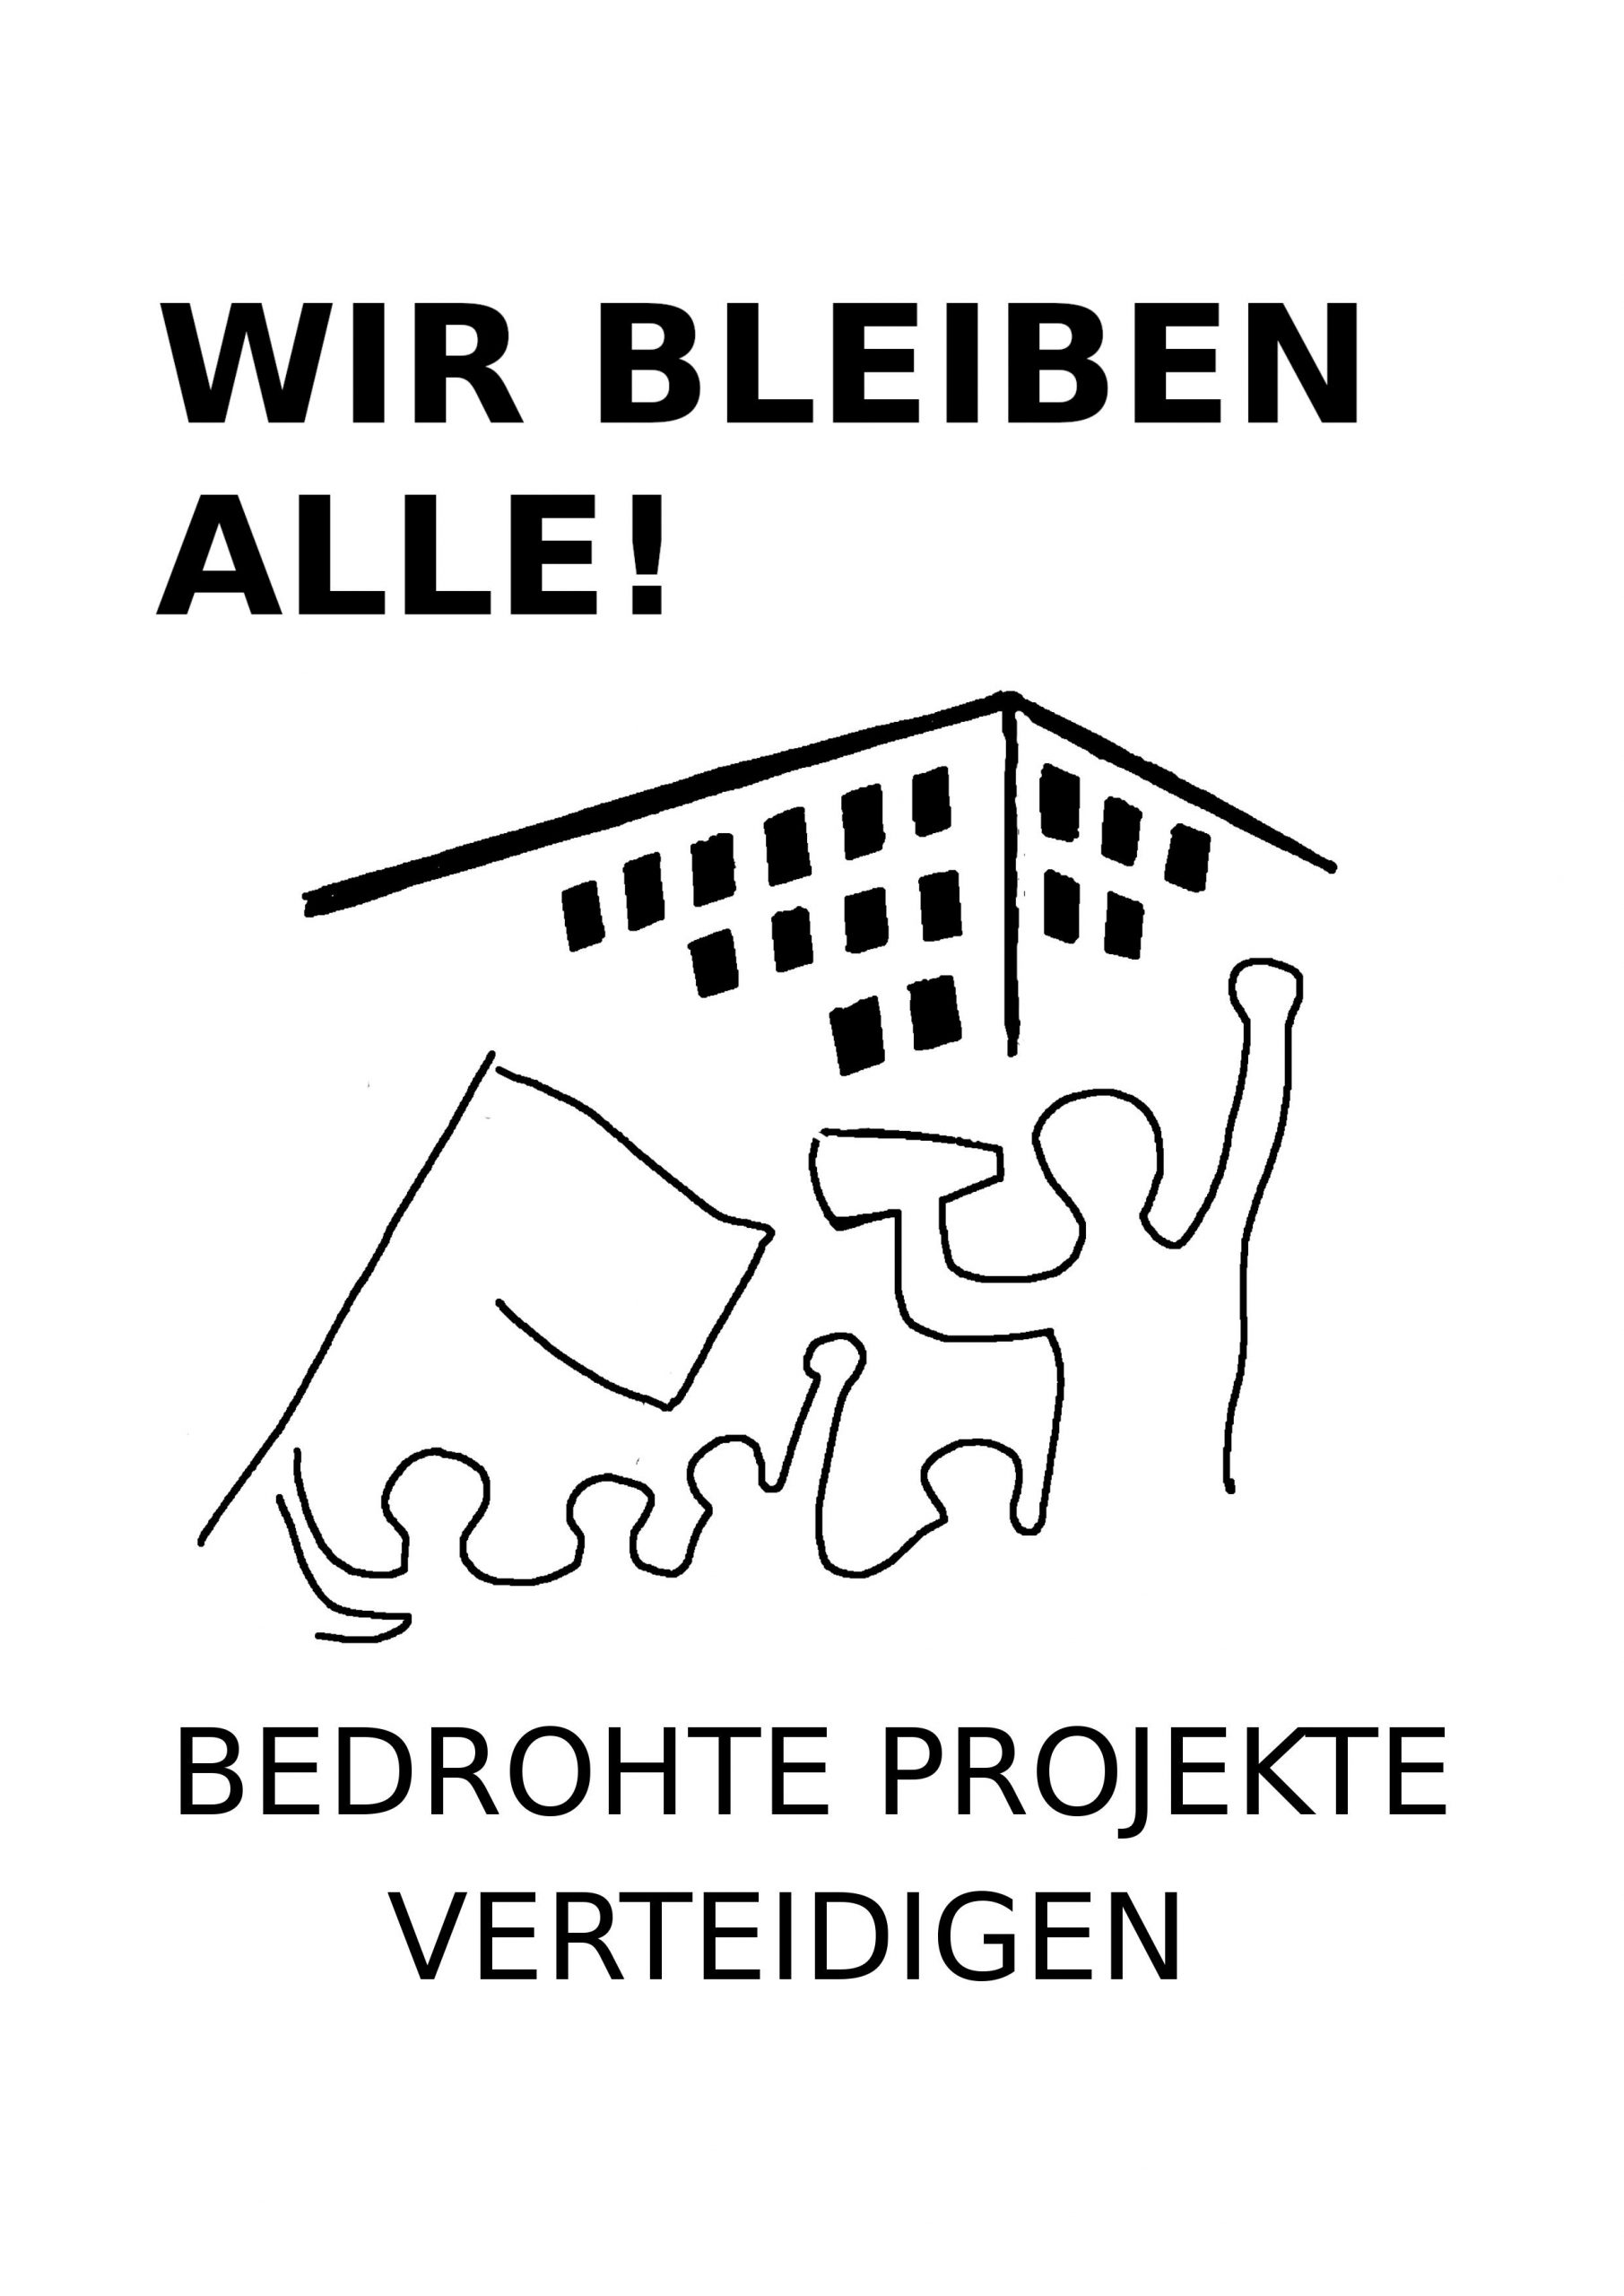 Stencil_WirBleibenAlle